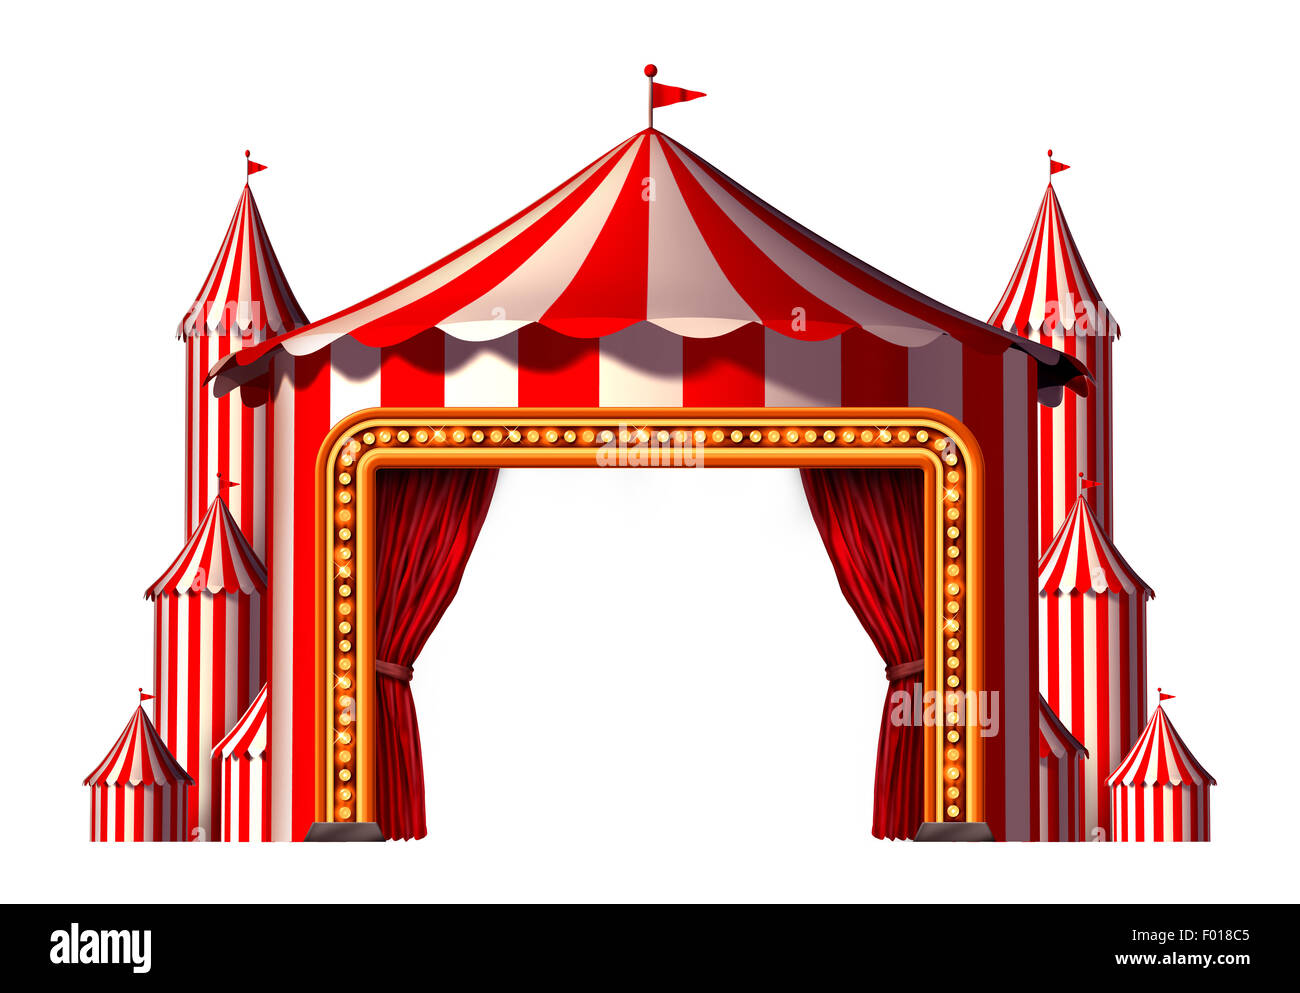 Carpa de circo escenario espacio en blanco como elemento de diseño un grupo de Big Top carnaval carpas con una apertura cortina roja de entrada como un icono de entretenimiento divertido para una fiesta teatral festival aislado sobre un fondo blanco. Foto de stock